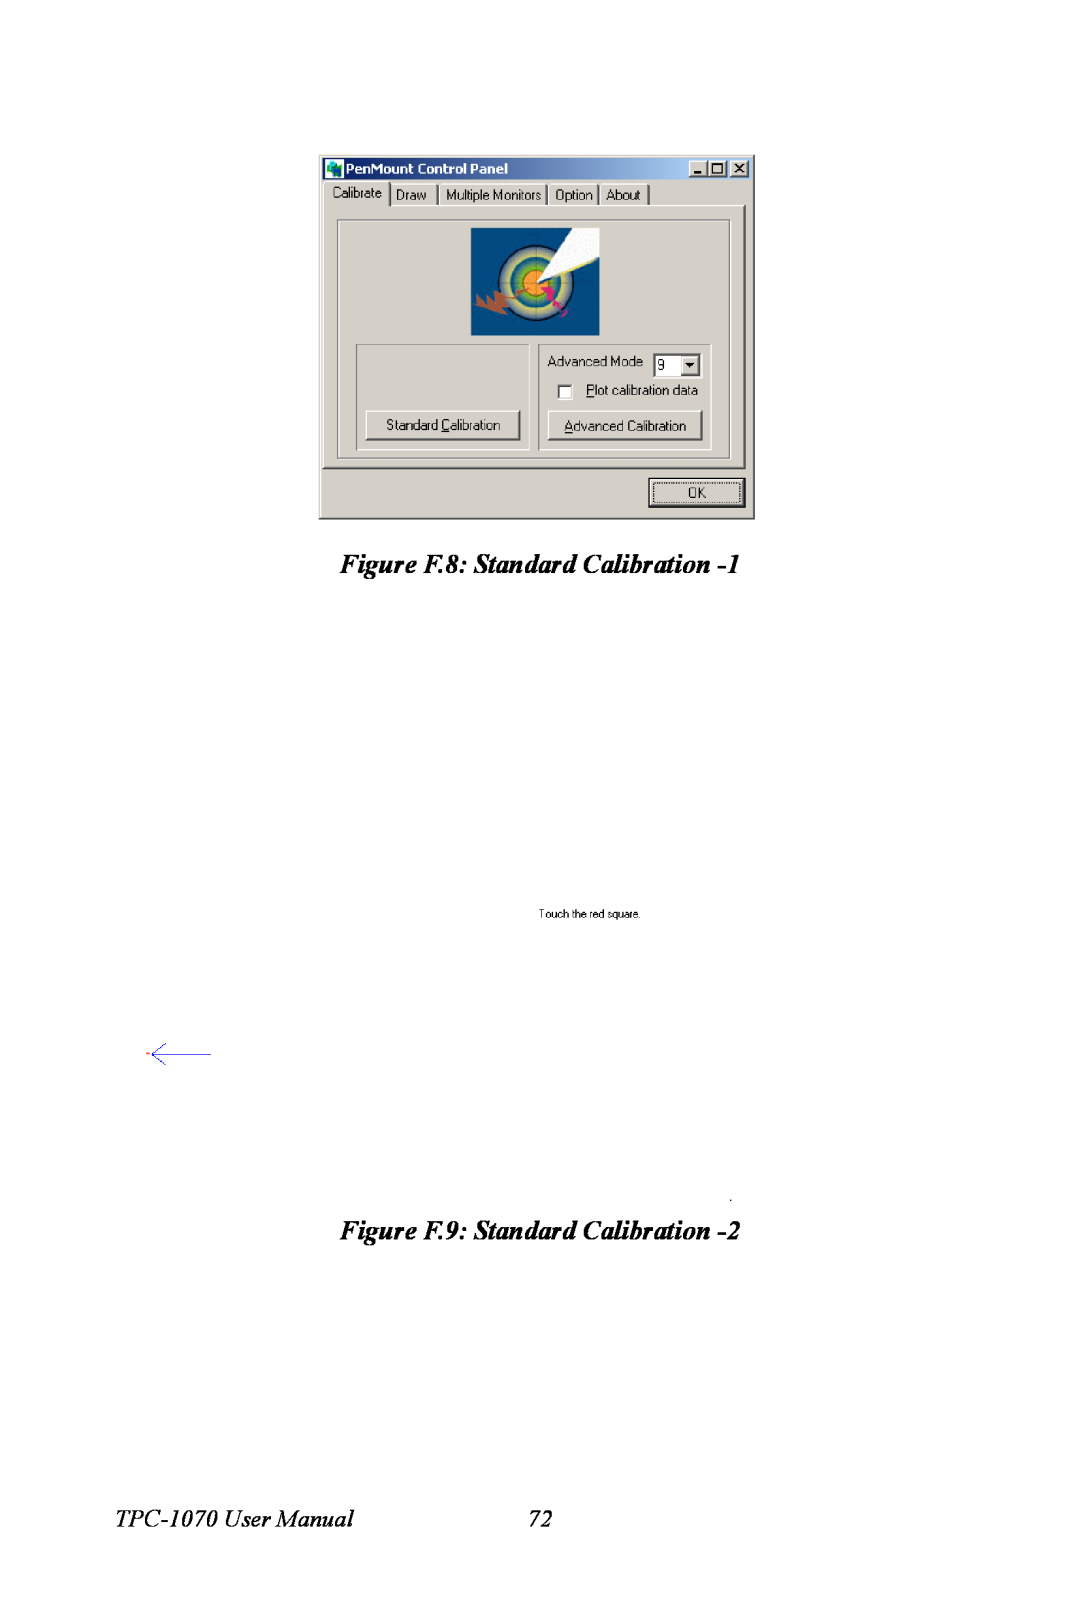 Intel user manual Figure F.8 Standard Calibration Figure F.9 Standard Calibration, TPC-1070 User Manual 